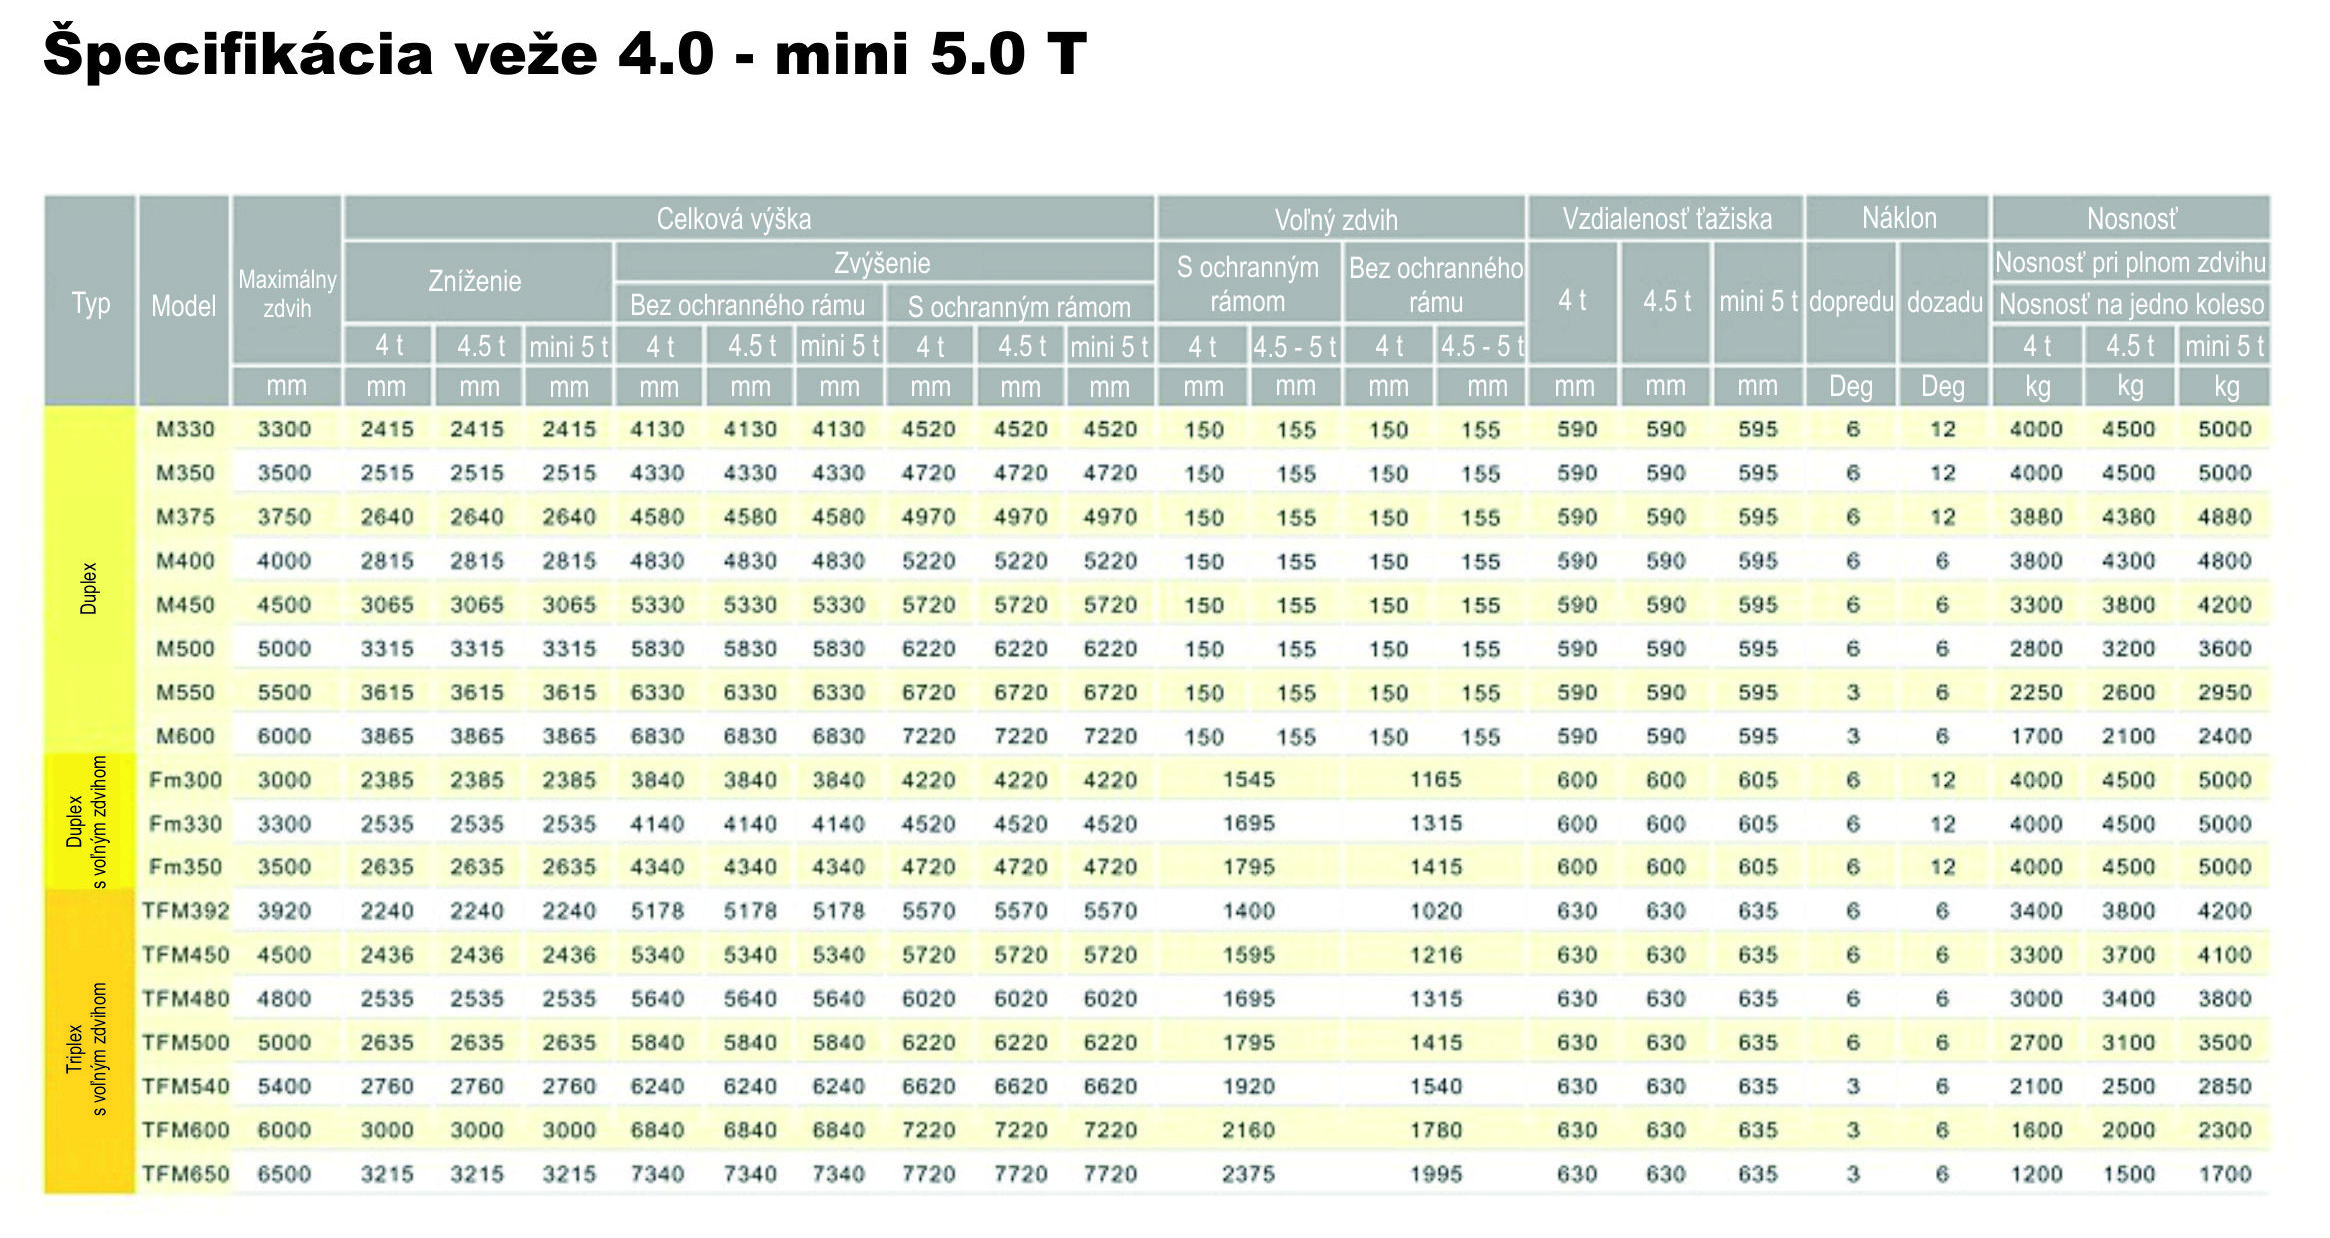 Špecifikácia veže_diesel_4.0 - 5.0 T MINI